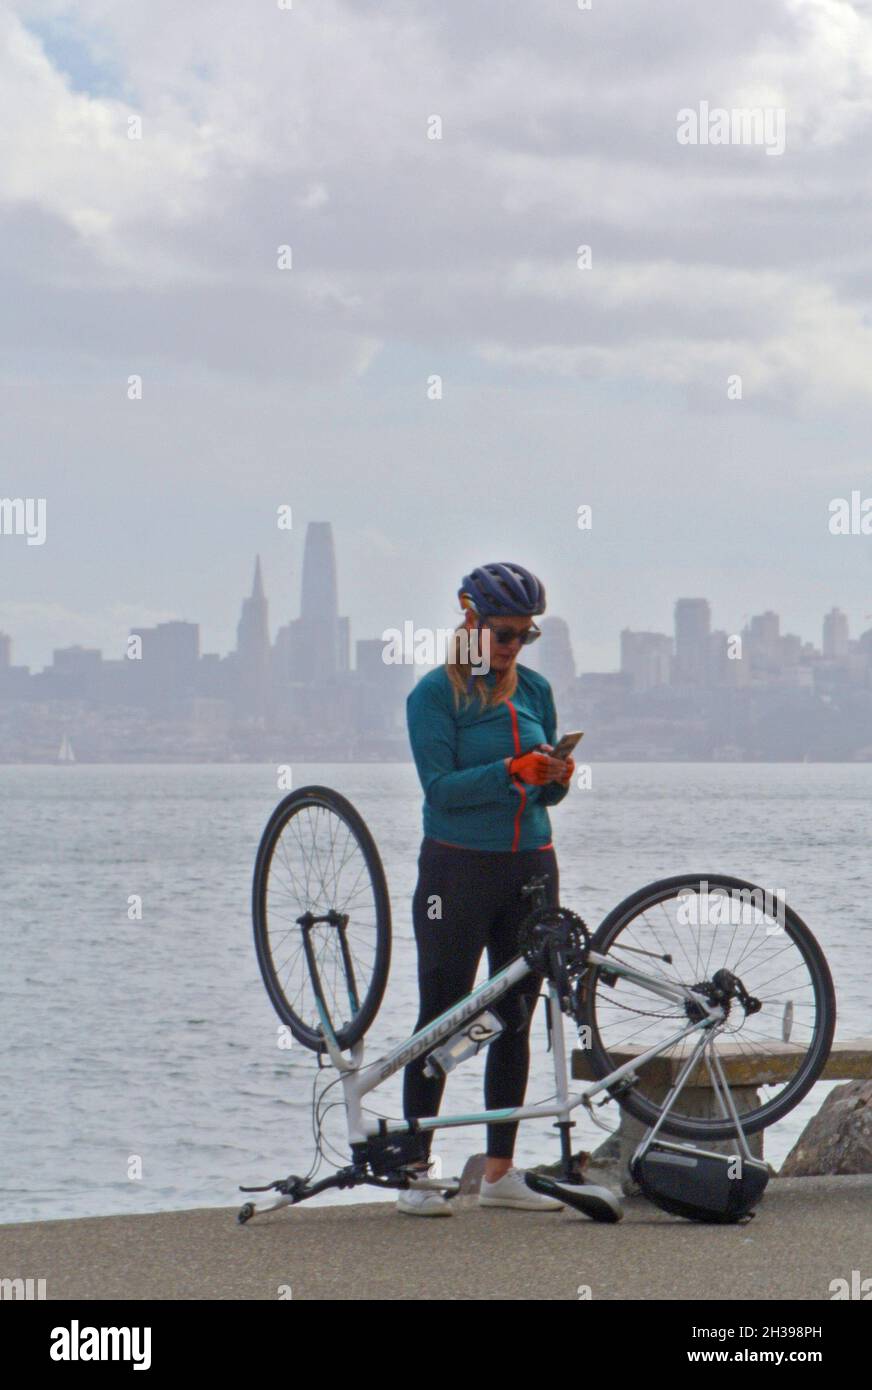 Ciclista en teléfono celular repara bicicleta en viaje a Sausalito Ca usa Foto de stock